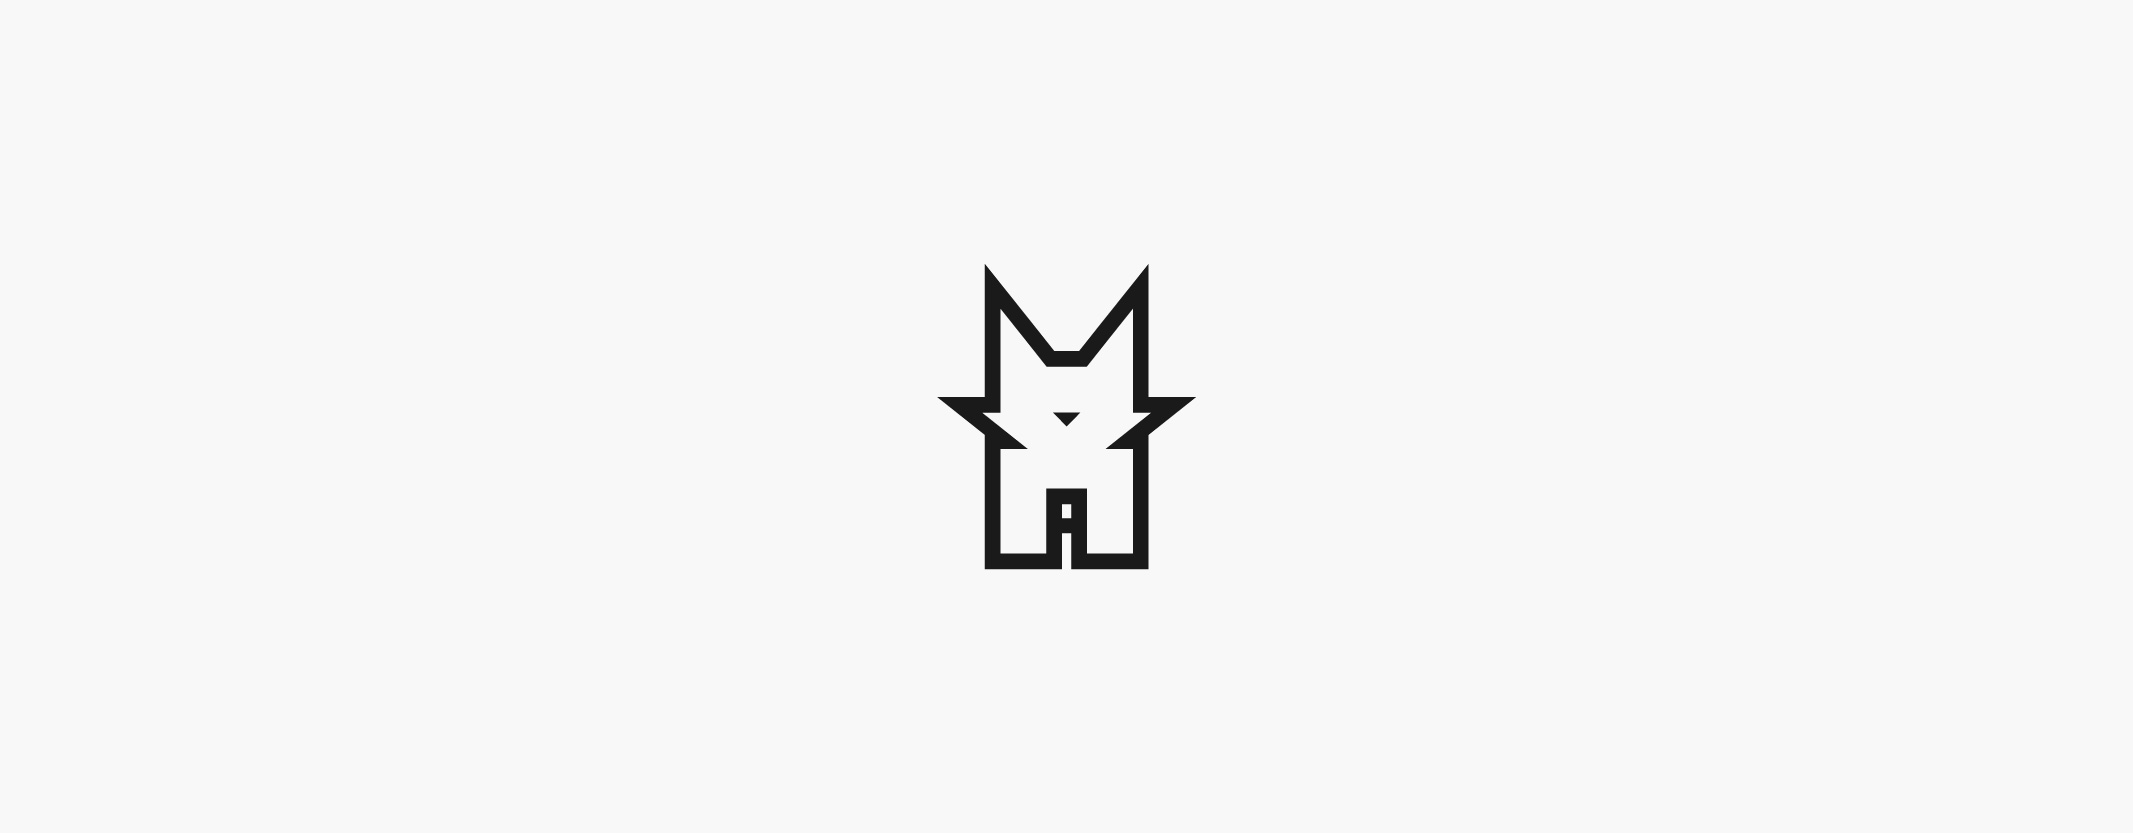 29_logos_cat